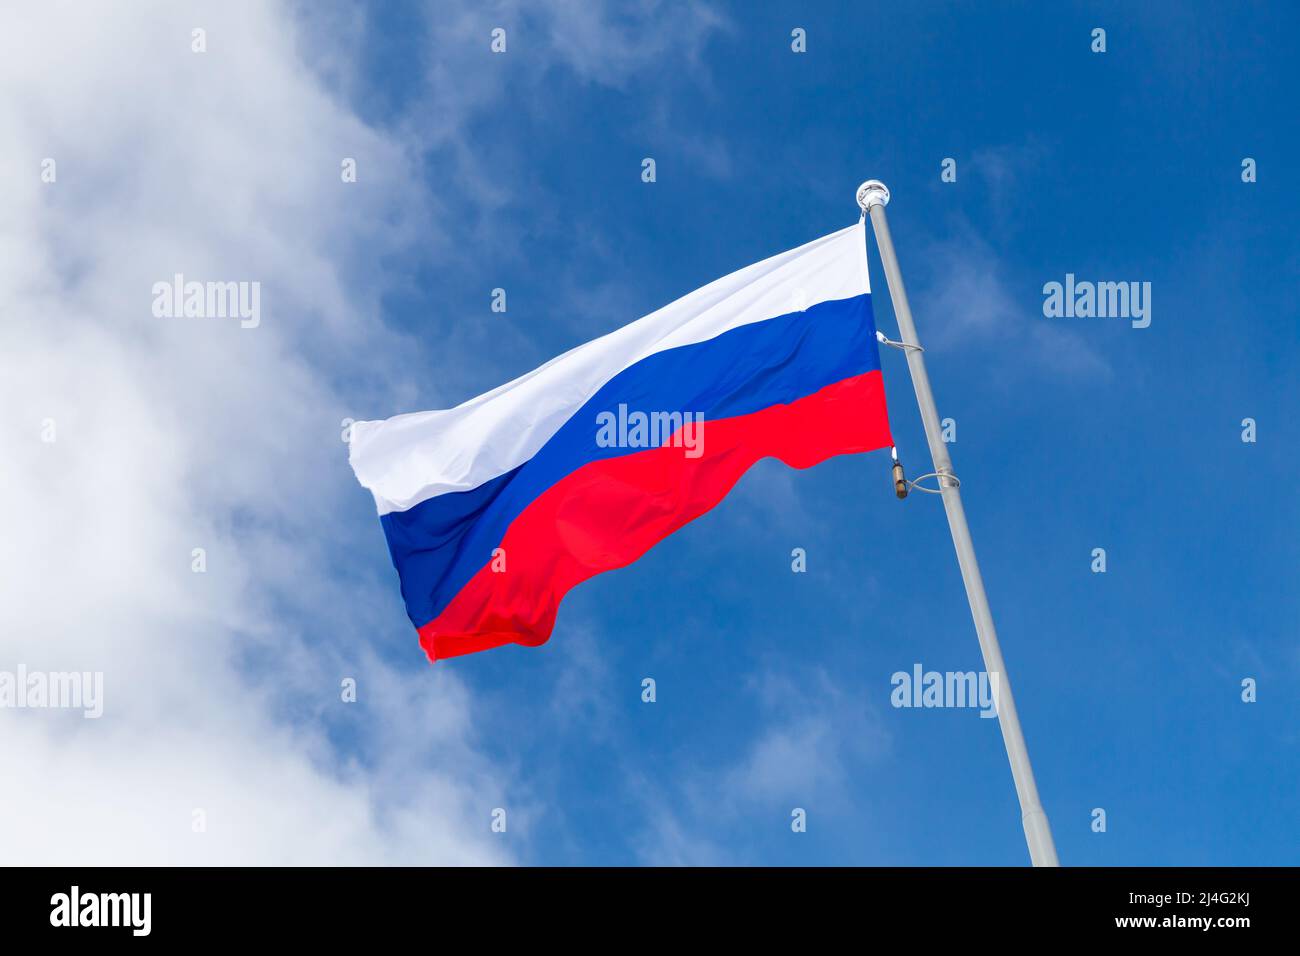 Le drapeau national de la Russie, également connu sous le nom de drapeau d'État de la Fédération de Russie, est sous le ciel bleu par un jour ensoleillé Banque D'Images